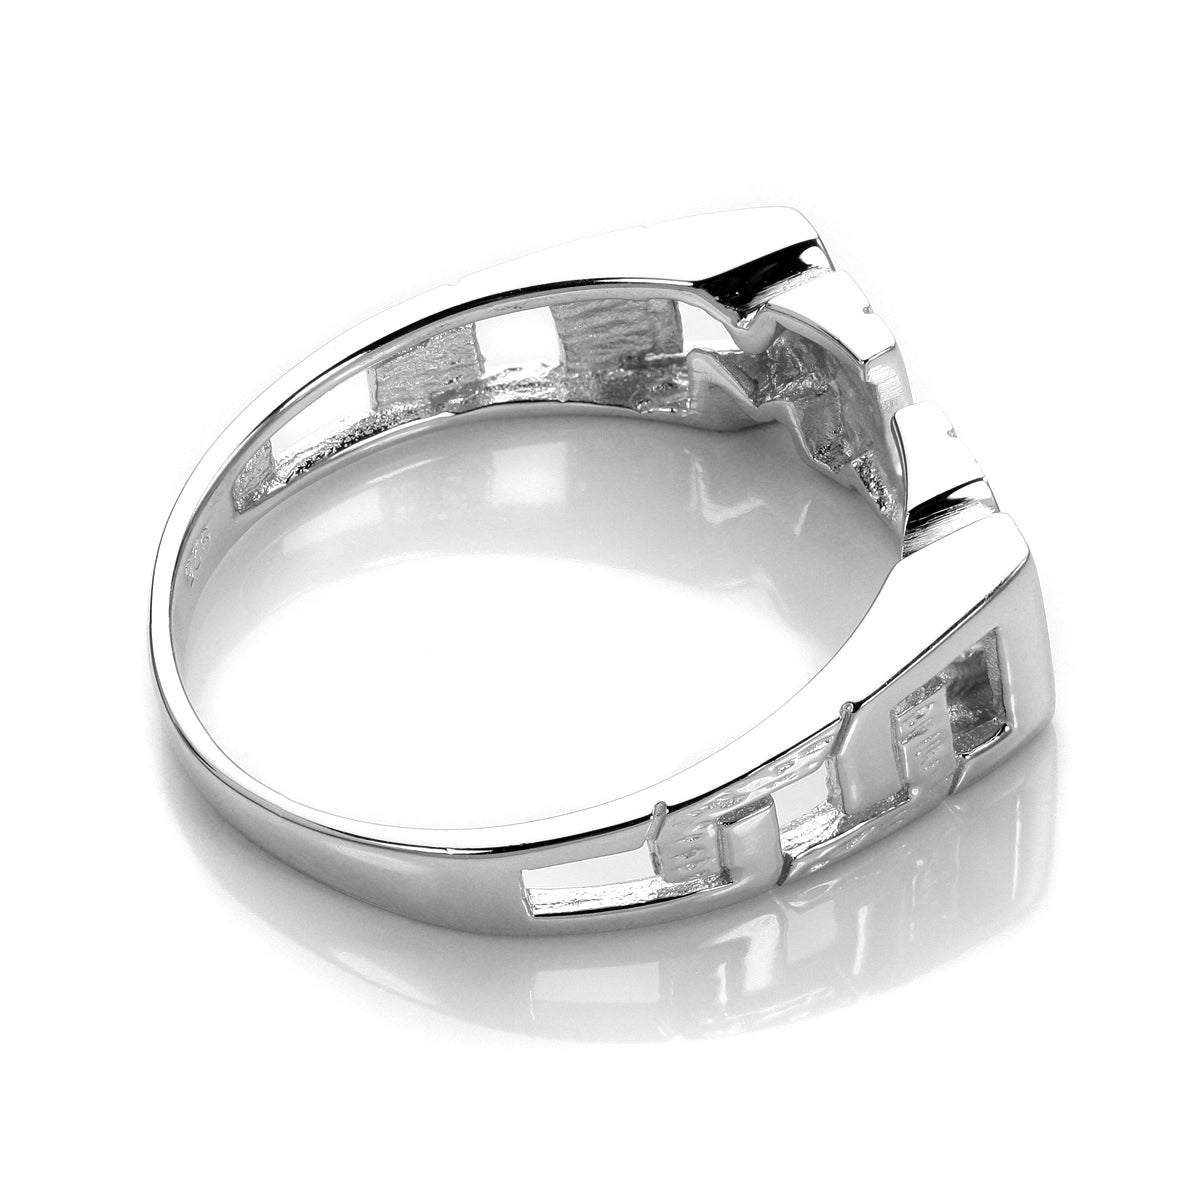 Sterlingsilber 'Mum' Ring